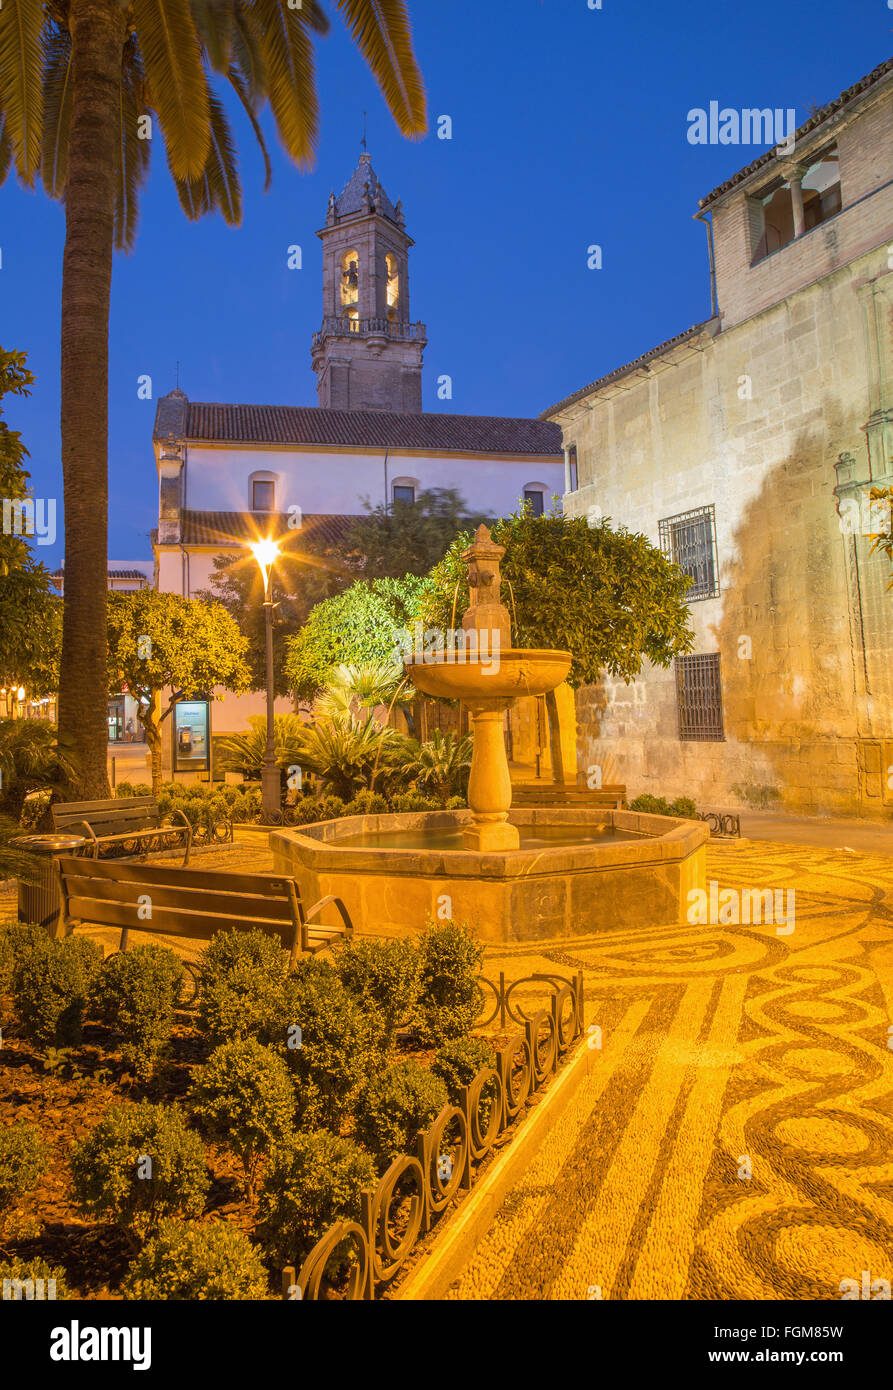 CORDOBA, Spanien - 26. Mai 2015: Die Plaza de San Andres Platz mit dem kleinen Brunnen in der Abenddämmerung. Stockfoto